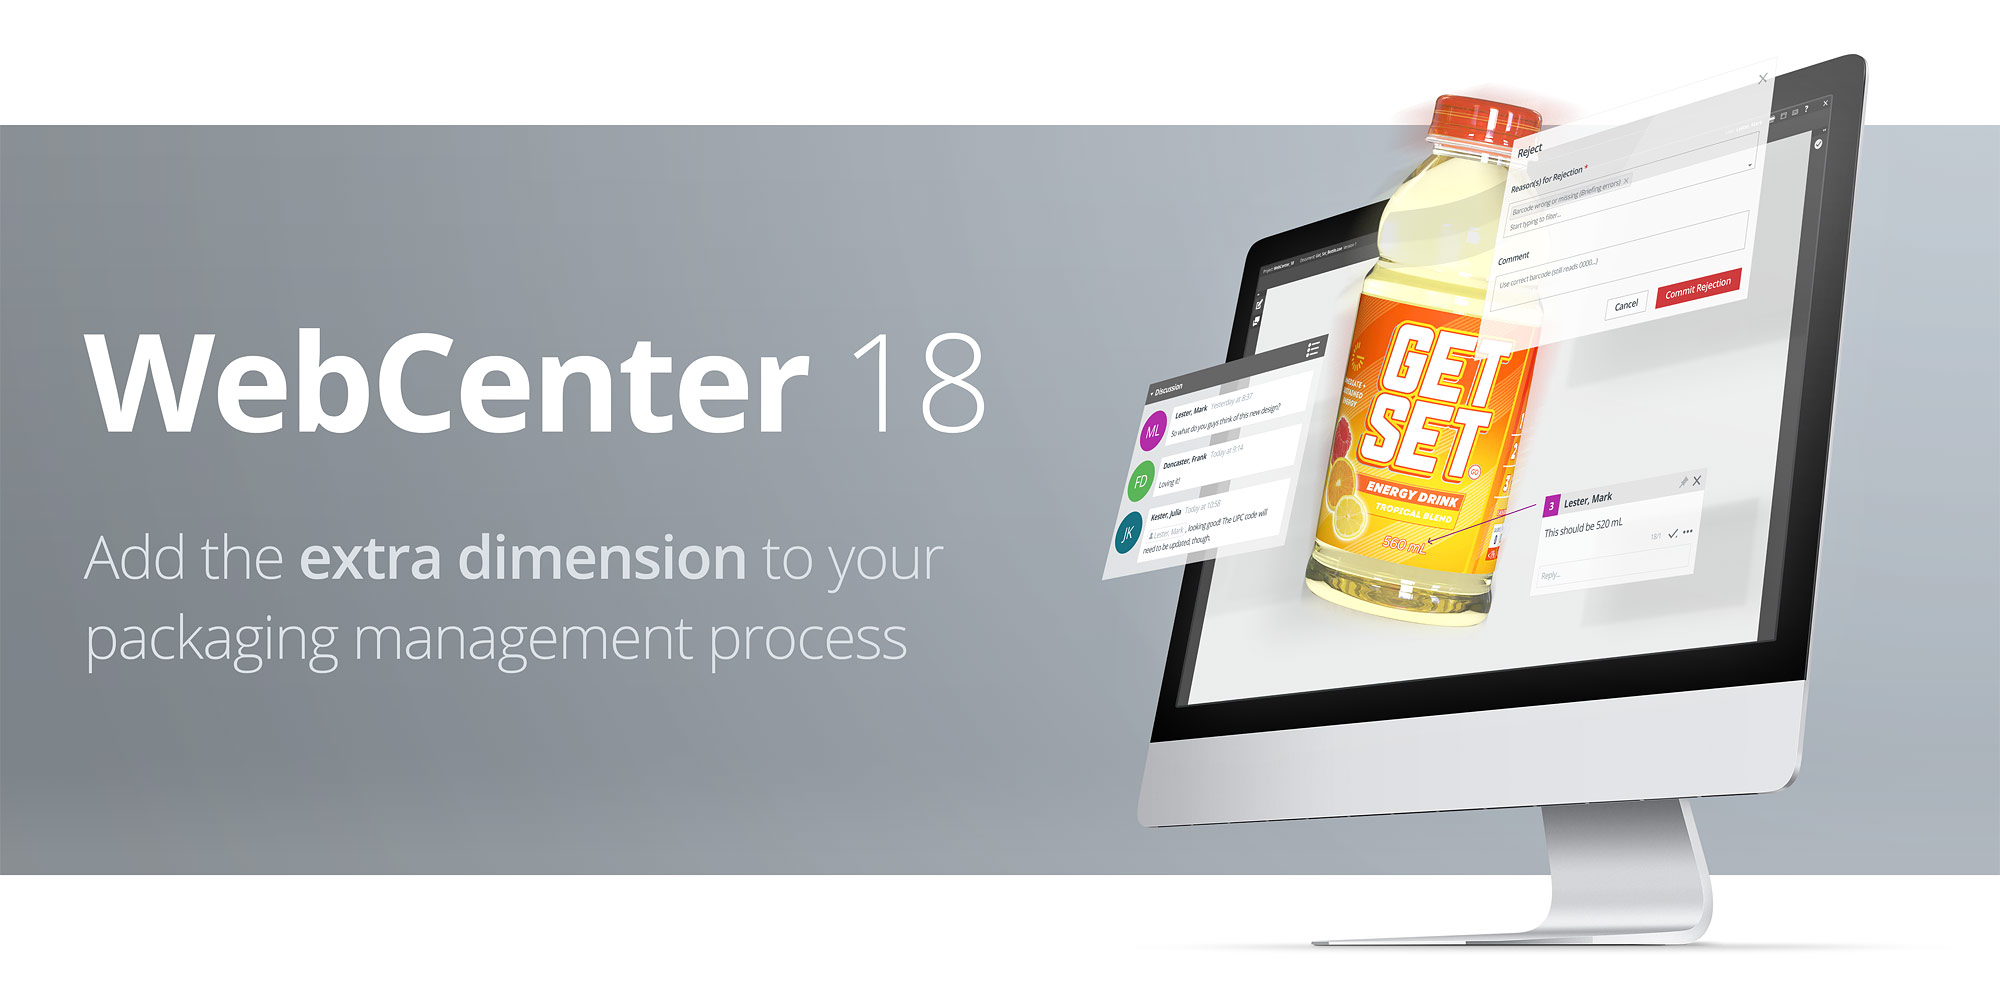 WebCenter 18 - Añadan una dimensión adicional a su proceso de administración de packaging